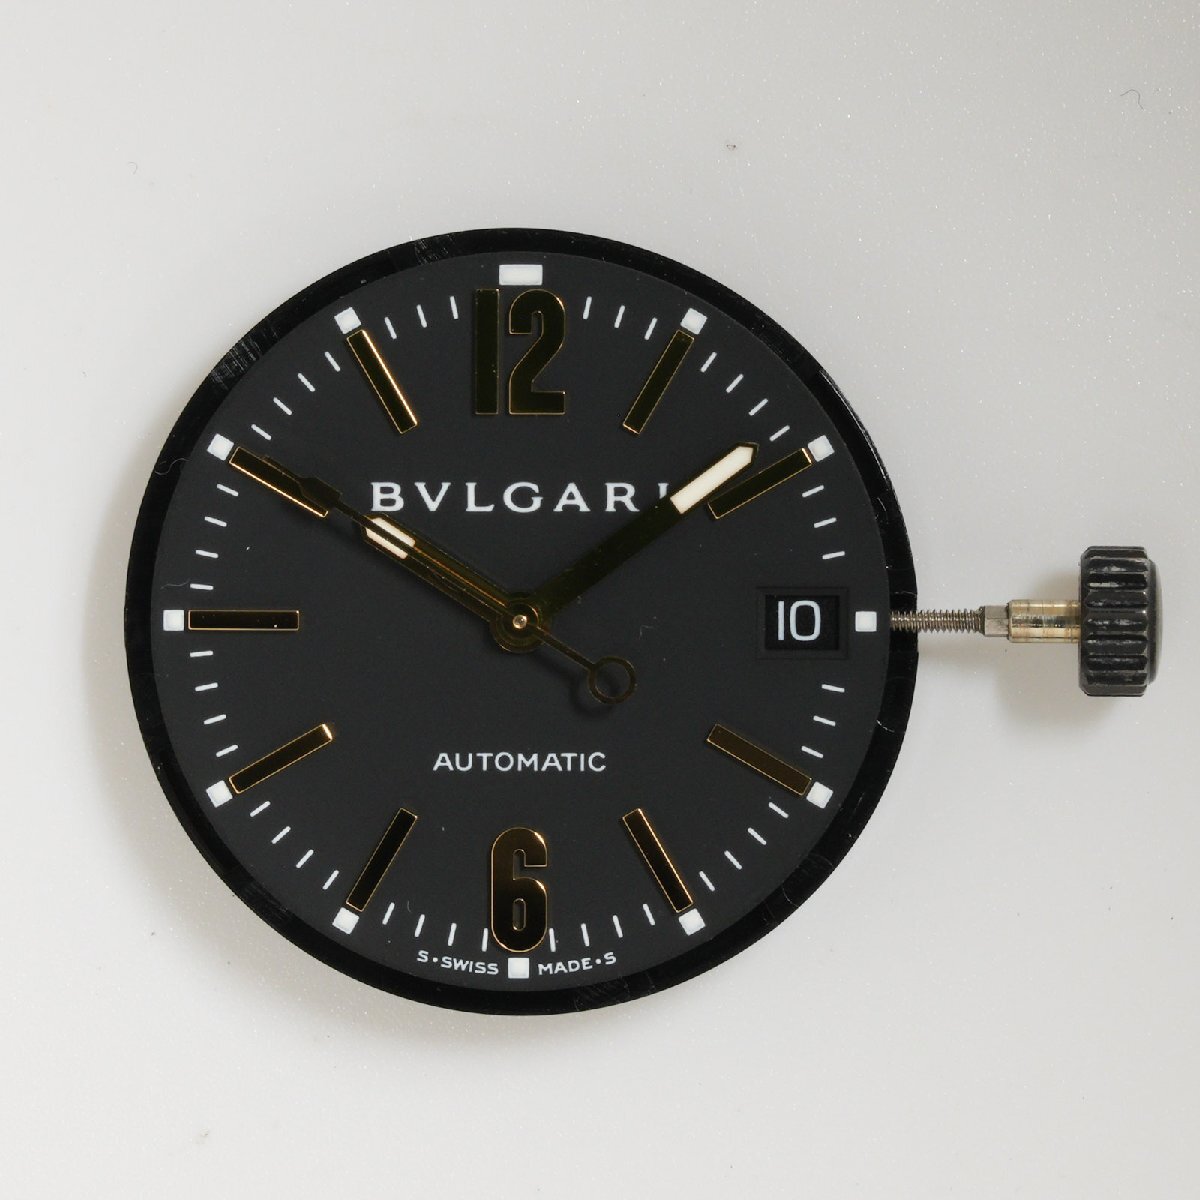 ブルガリ BVLGARI 腕時計 ムーブメント Cal. 220 ディアゴノ外し 自動巻 中古 動作品 [質イコー]の画像1